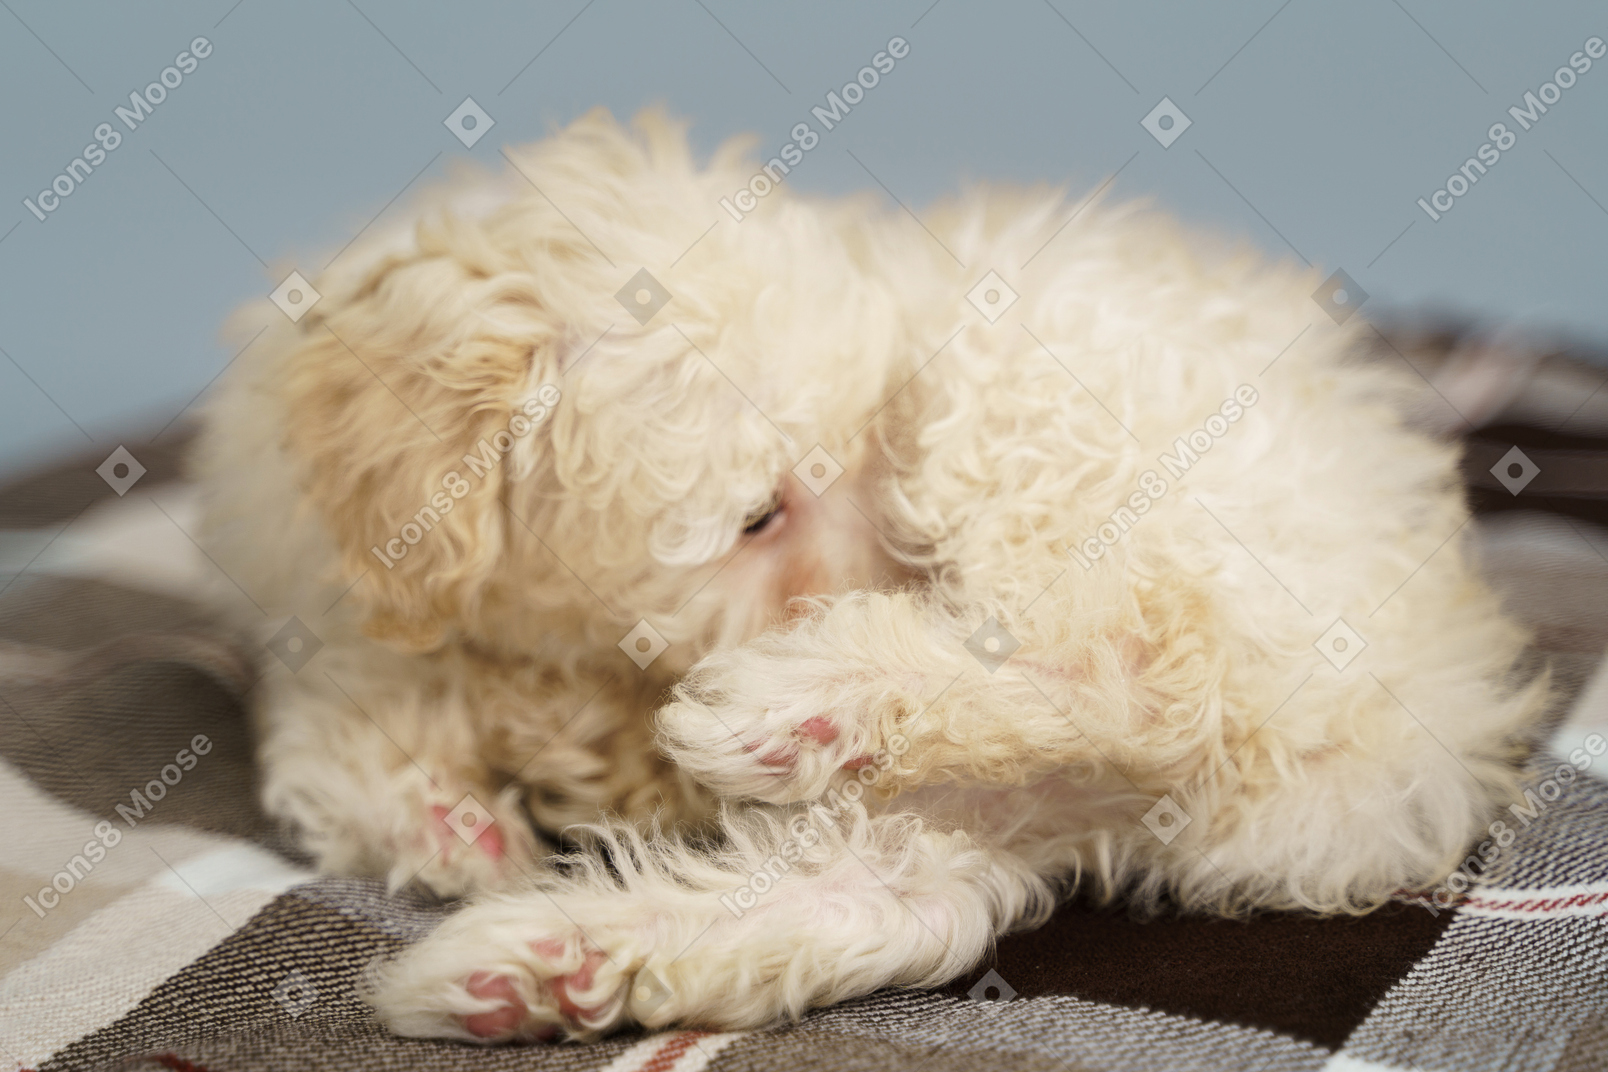 В полный рост крохотный щенок лежит на клетчатом одеяле и смотрит в сторону